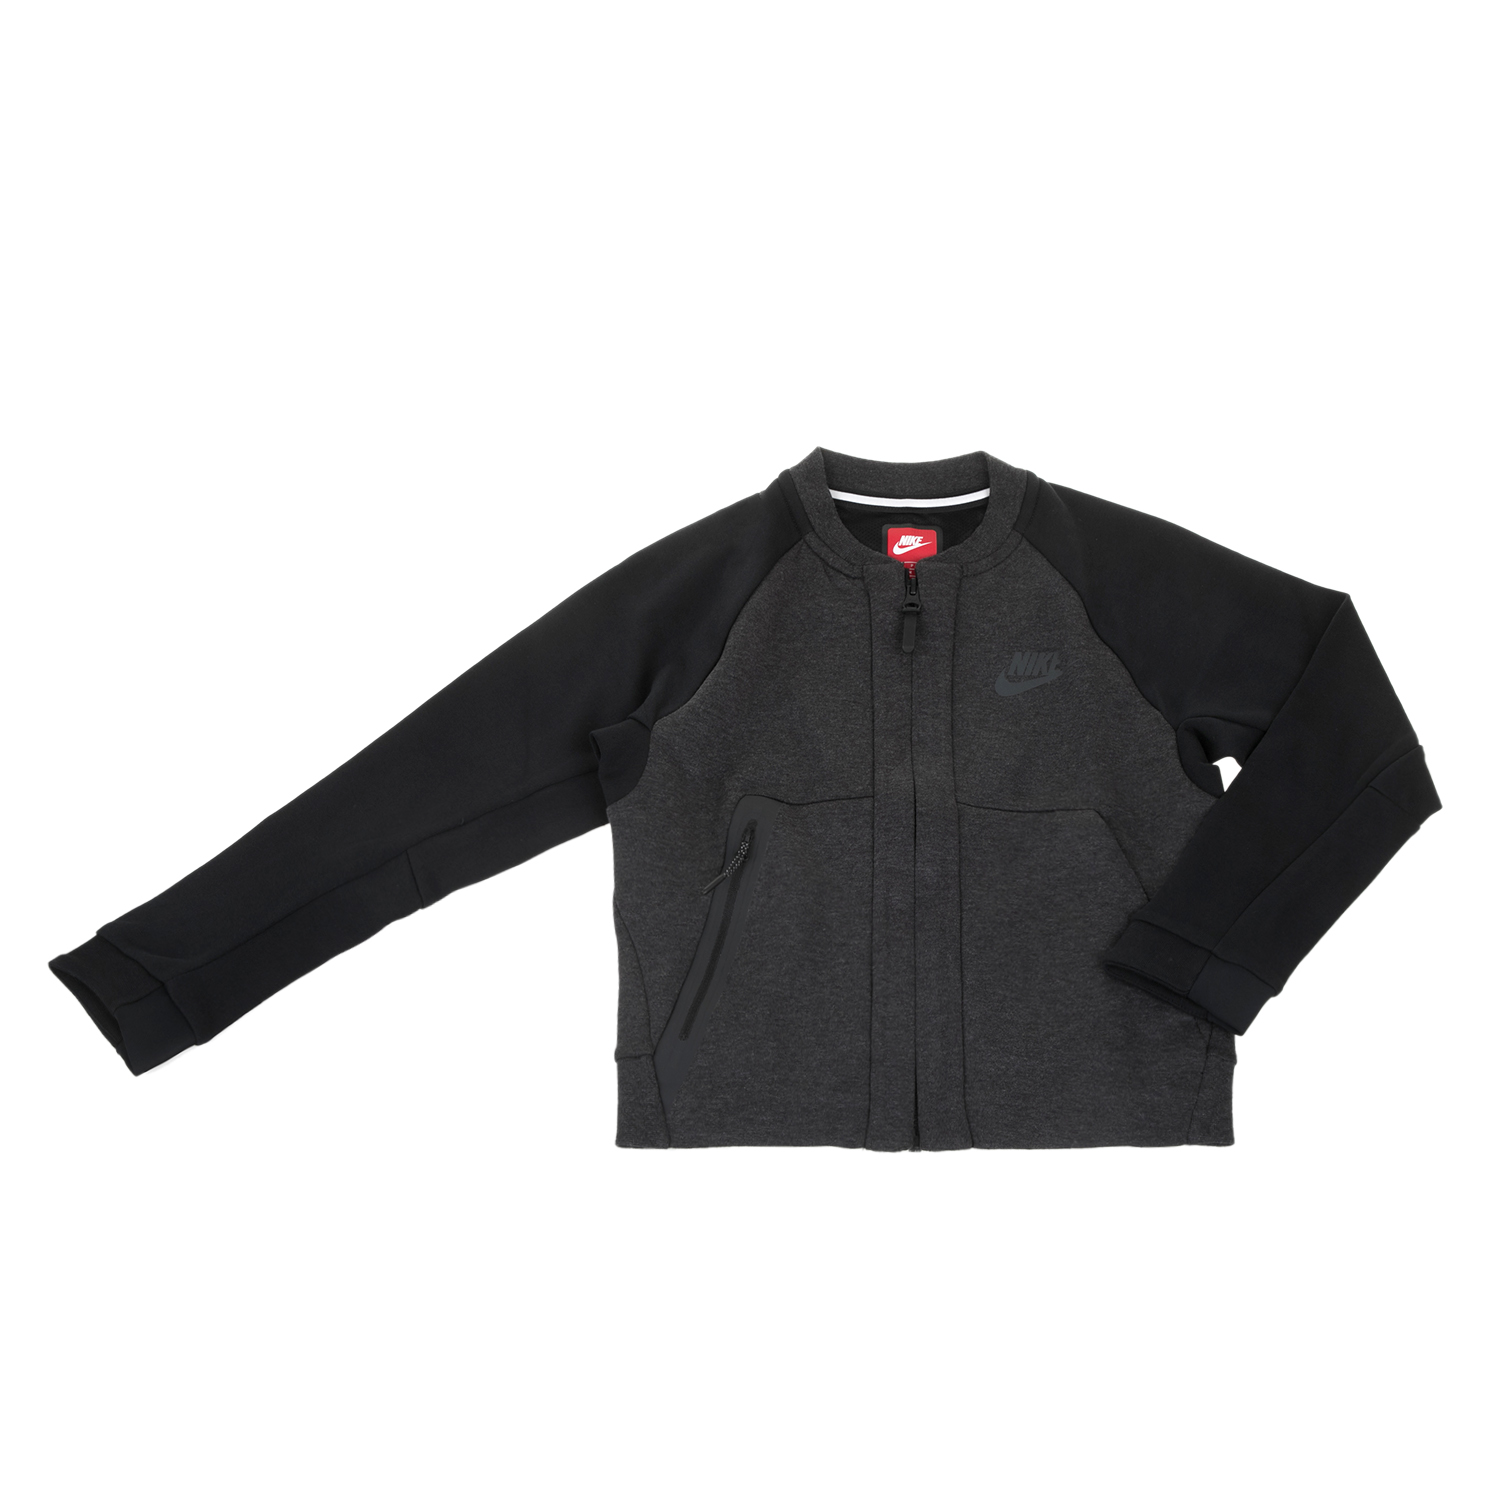 Παιδικά/Boys/Ρούχα/Φούτερ NIKE - Αγορίστικη ζακέτα NIKE TCH FLC γκρι-μαύρη